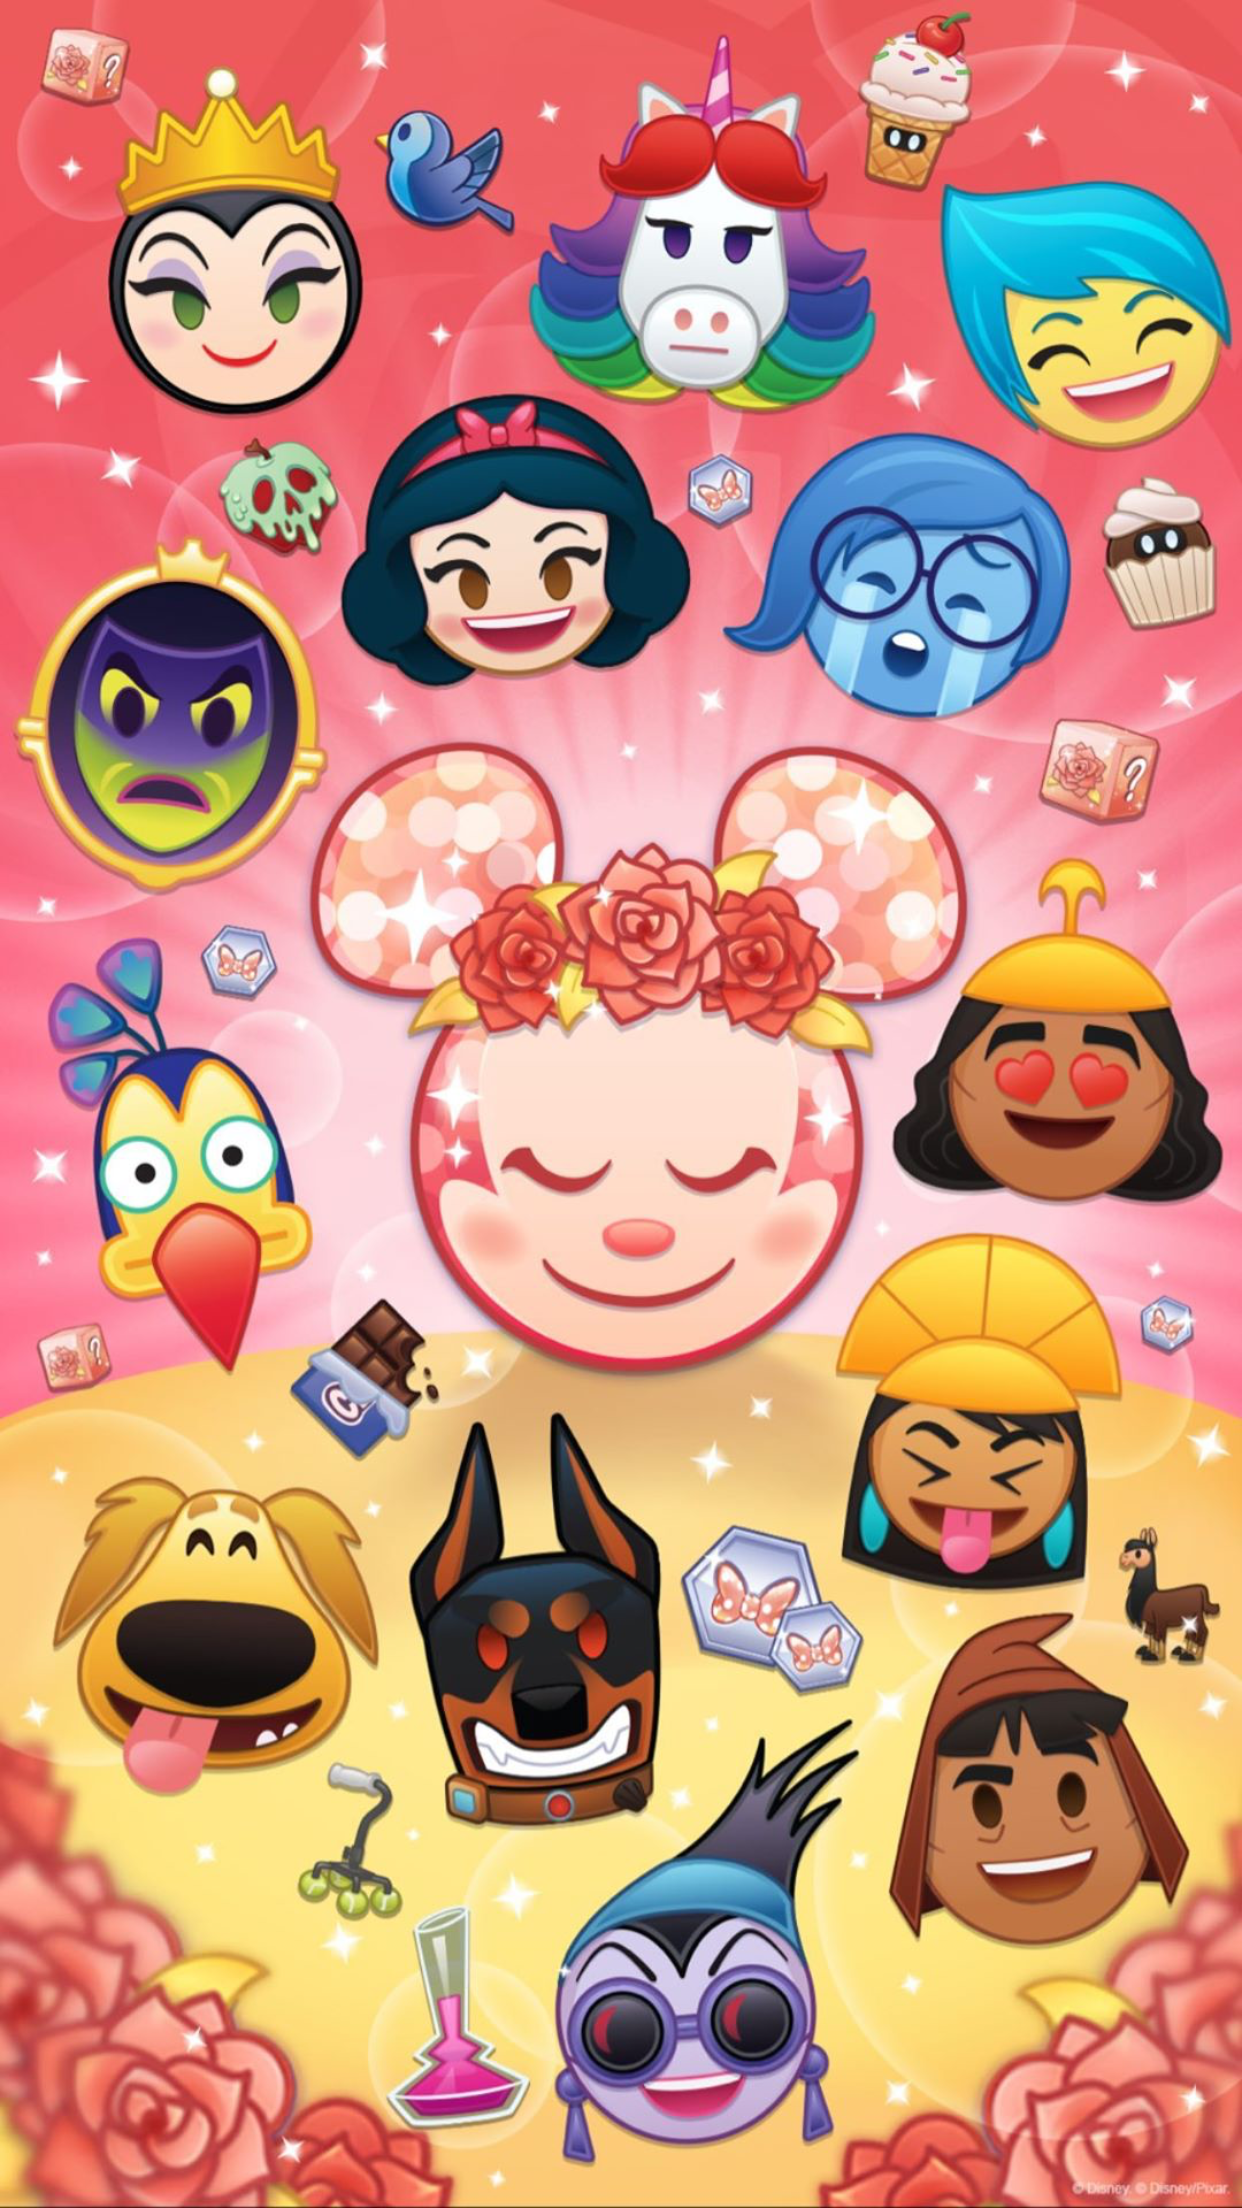 Disney Emoji's. Disney emoji blitz, Disney emoji, Disney phone wallpaper